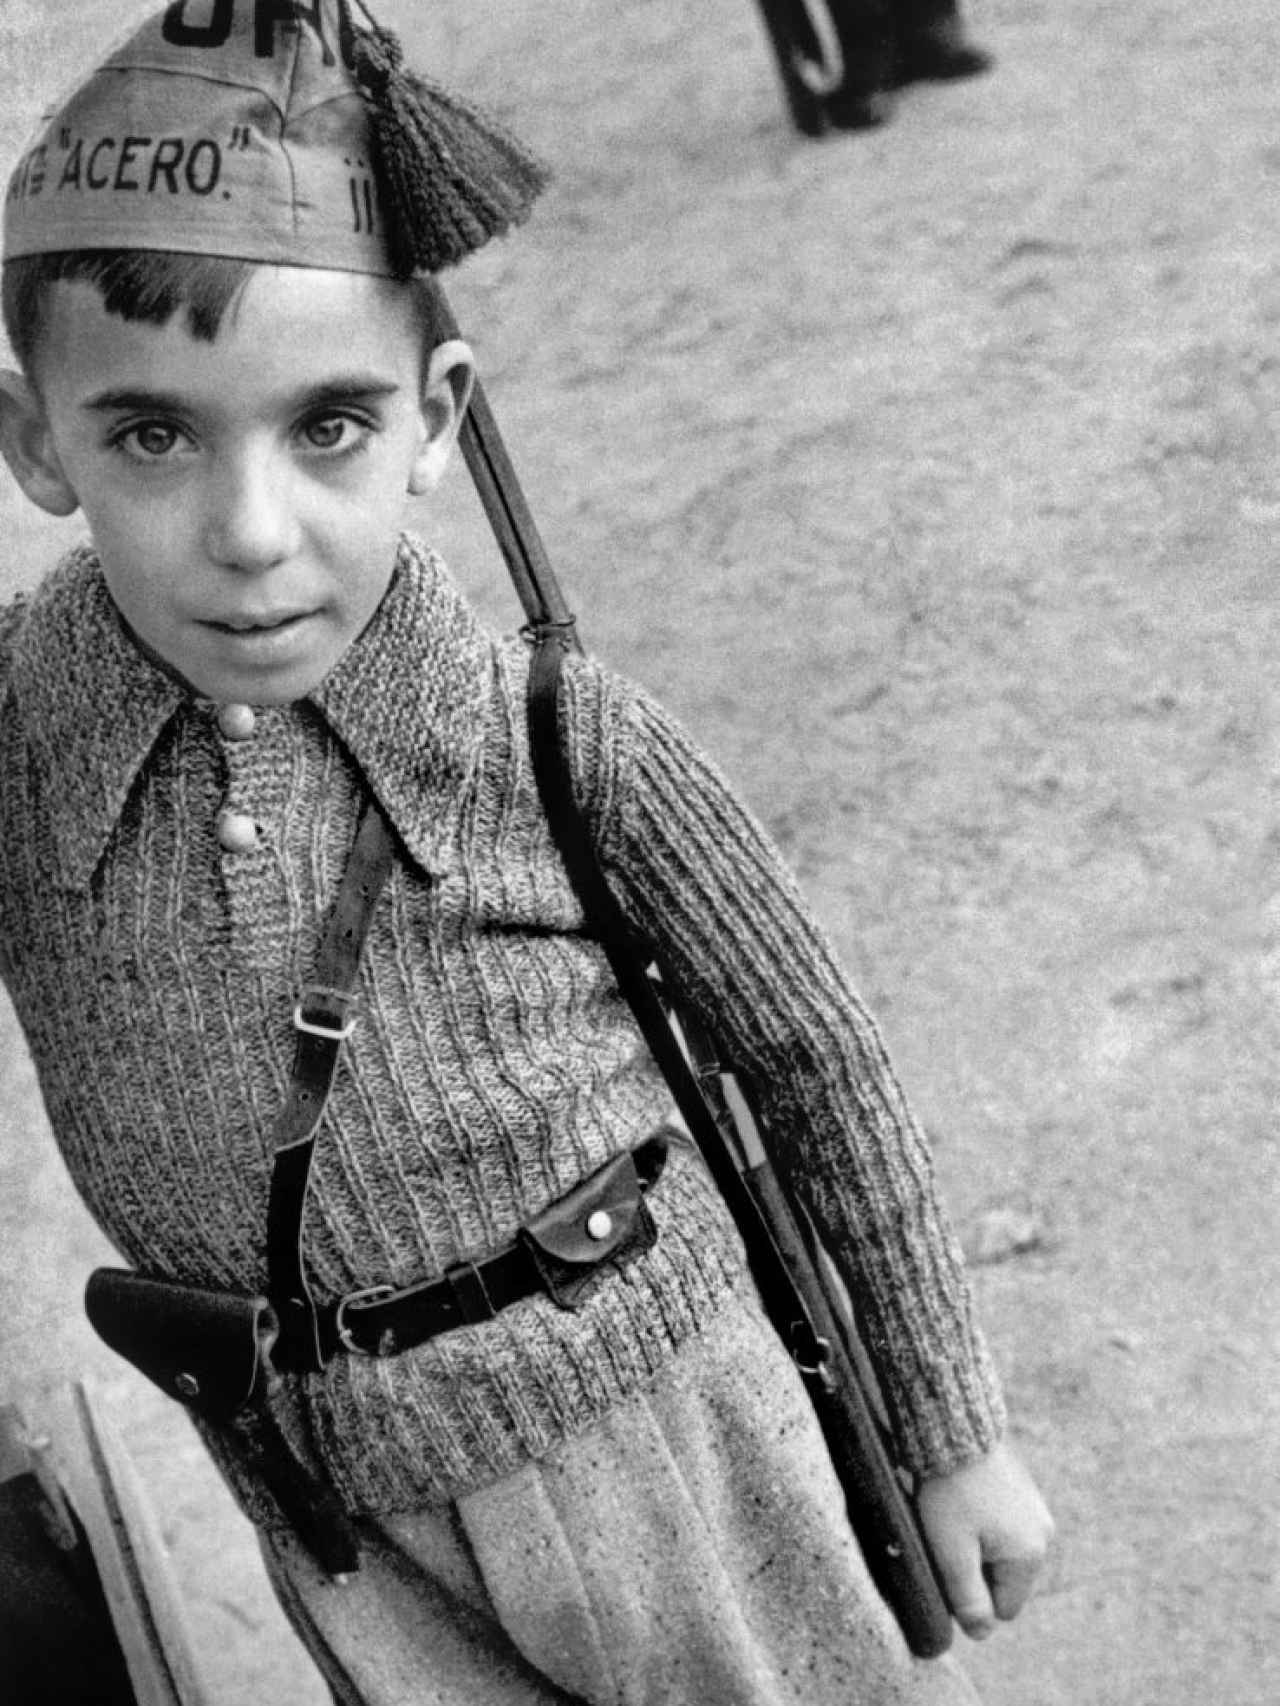 Un niño con una gorra que pertenece al Batallón de Acero, de la milicia anarquista Unión de los Hermanos Proletarios. David Seymour / Magnum Photos / Contacto